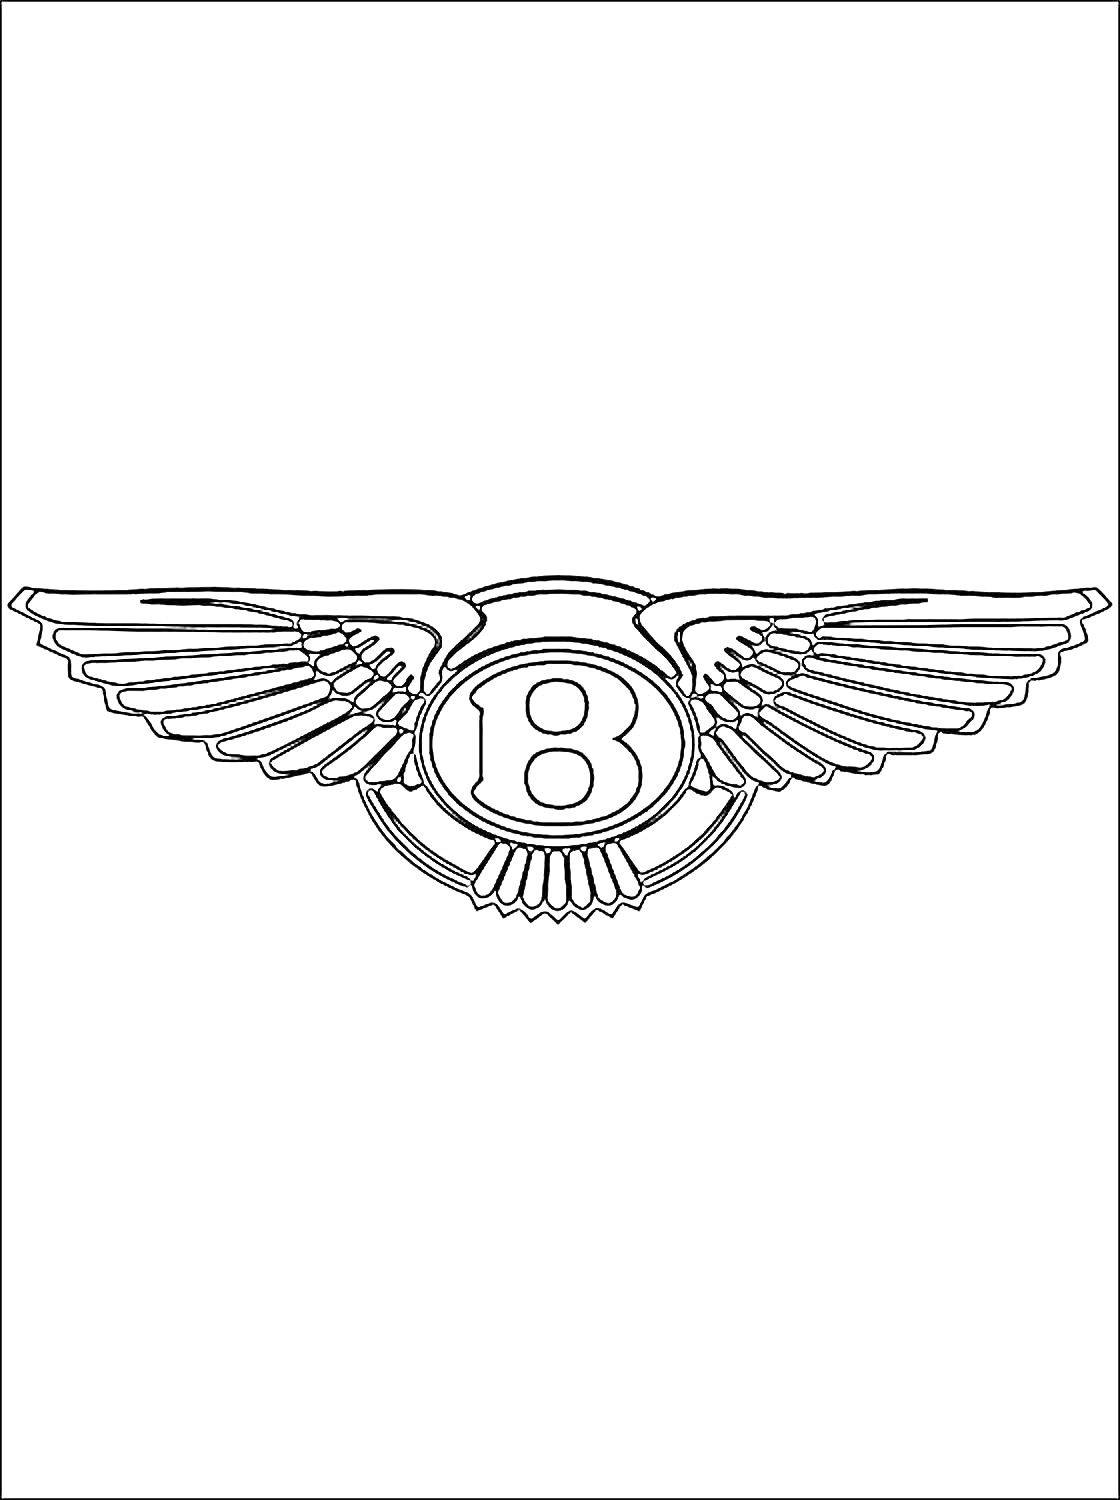 Раскраска Логотип Бентли с крыльями и буквой 